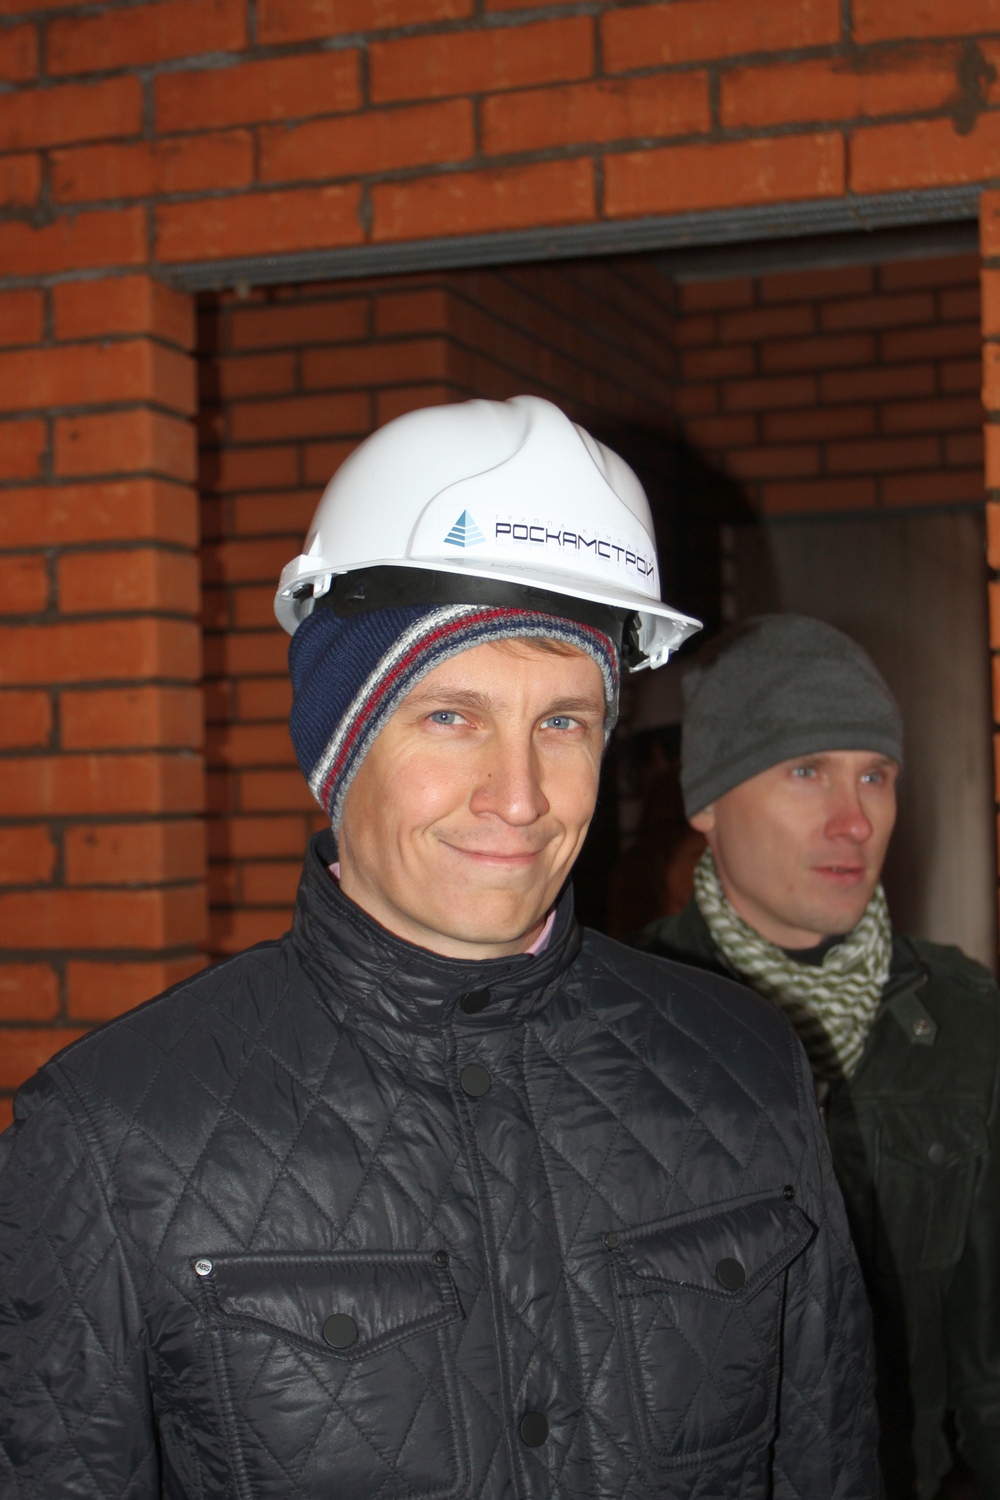 Экскурсия на строительные площадки Ижевска, октябрь 2014